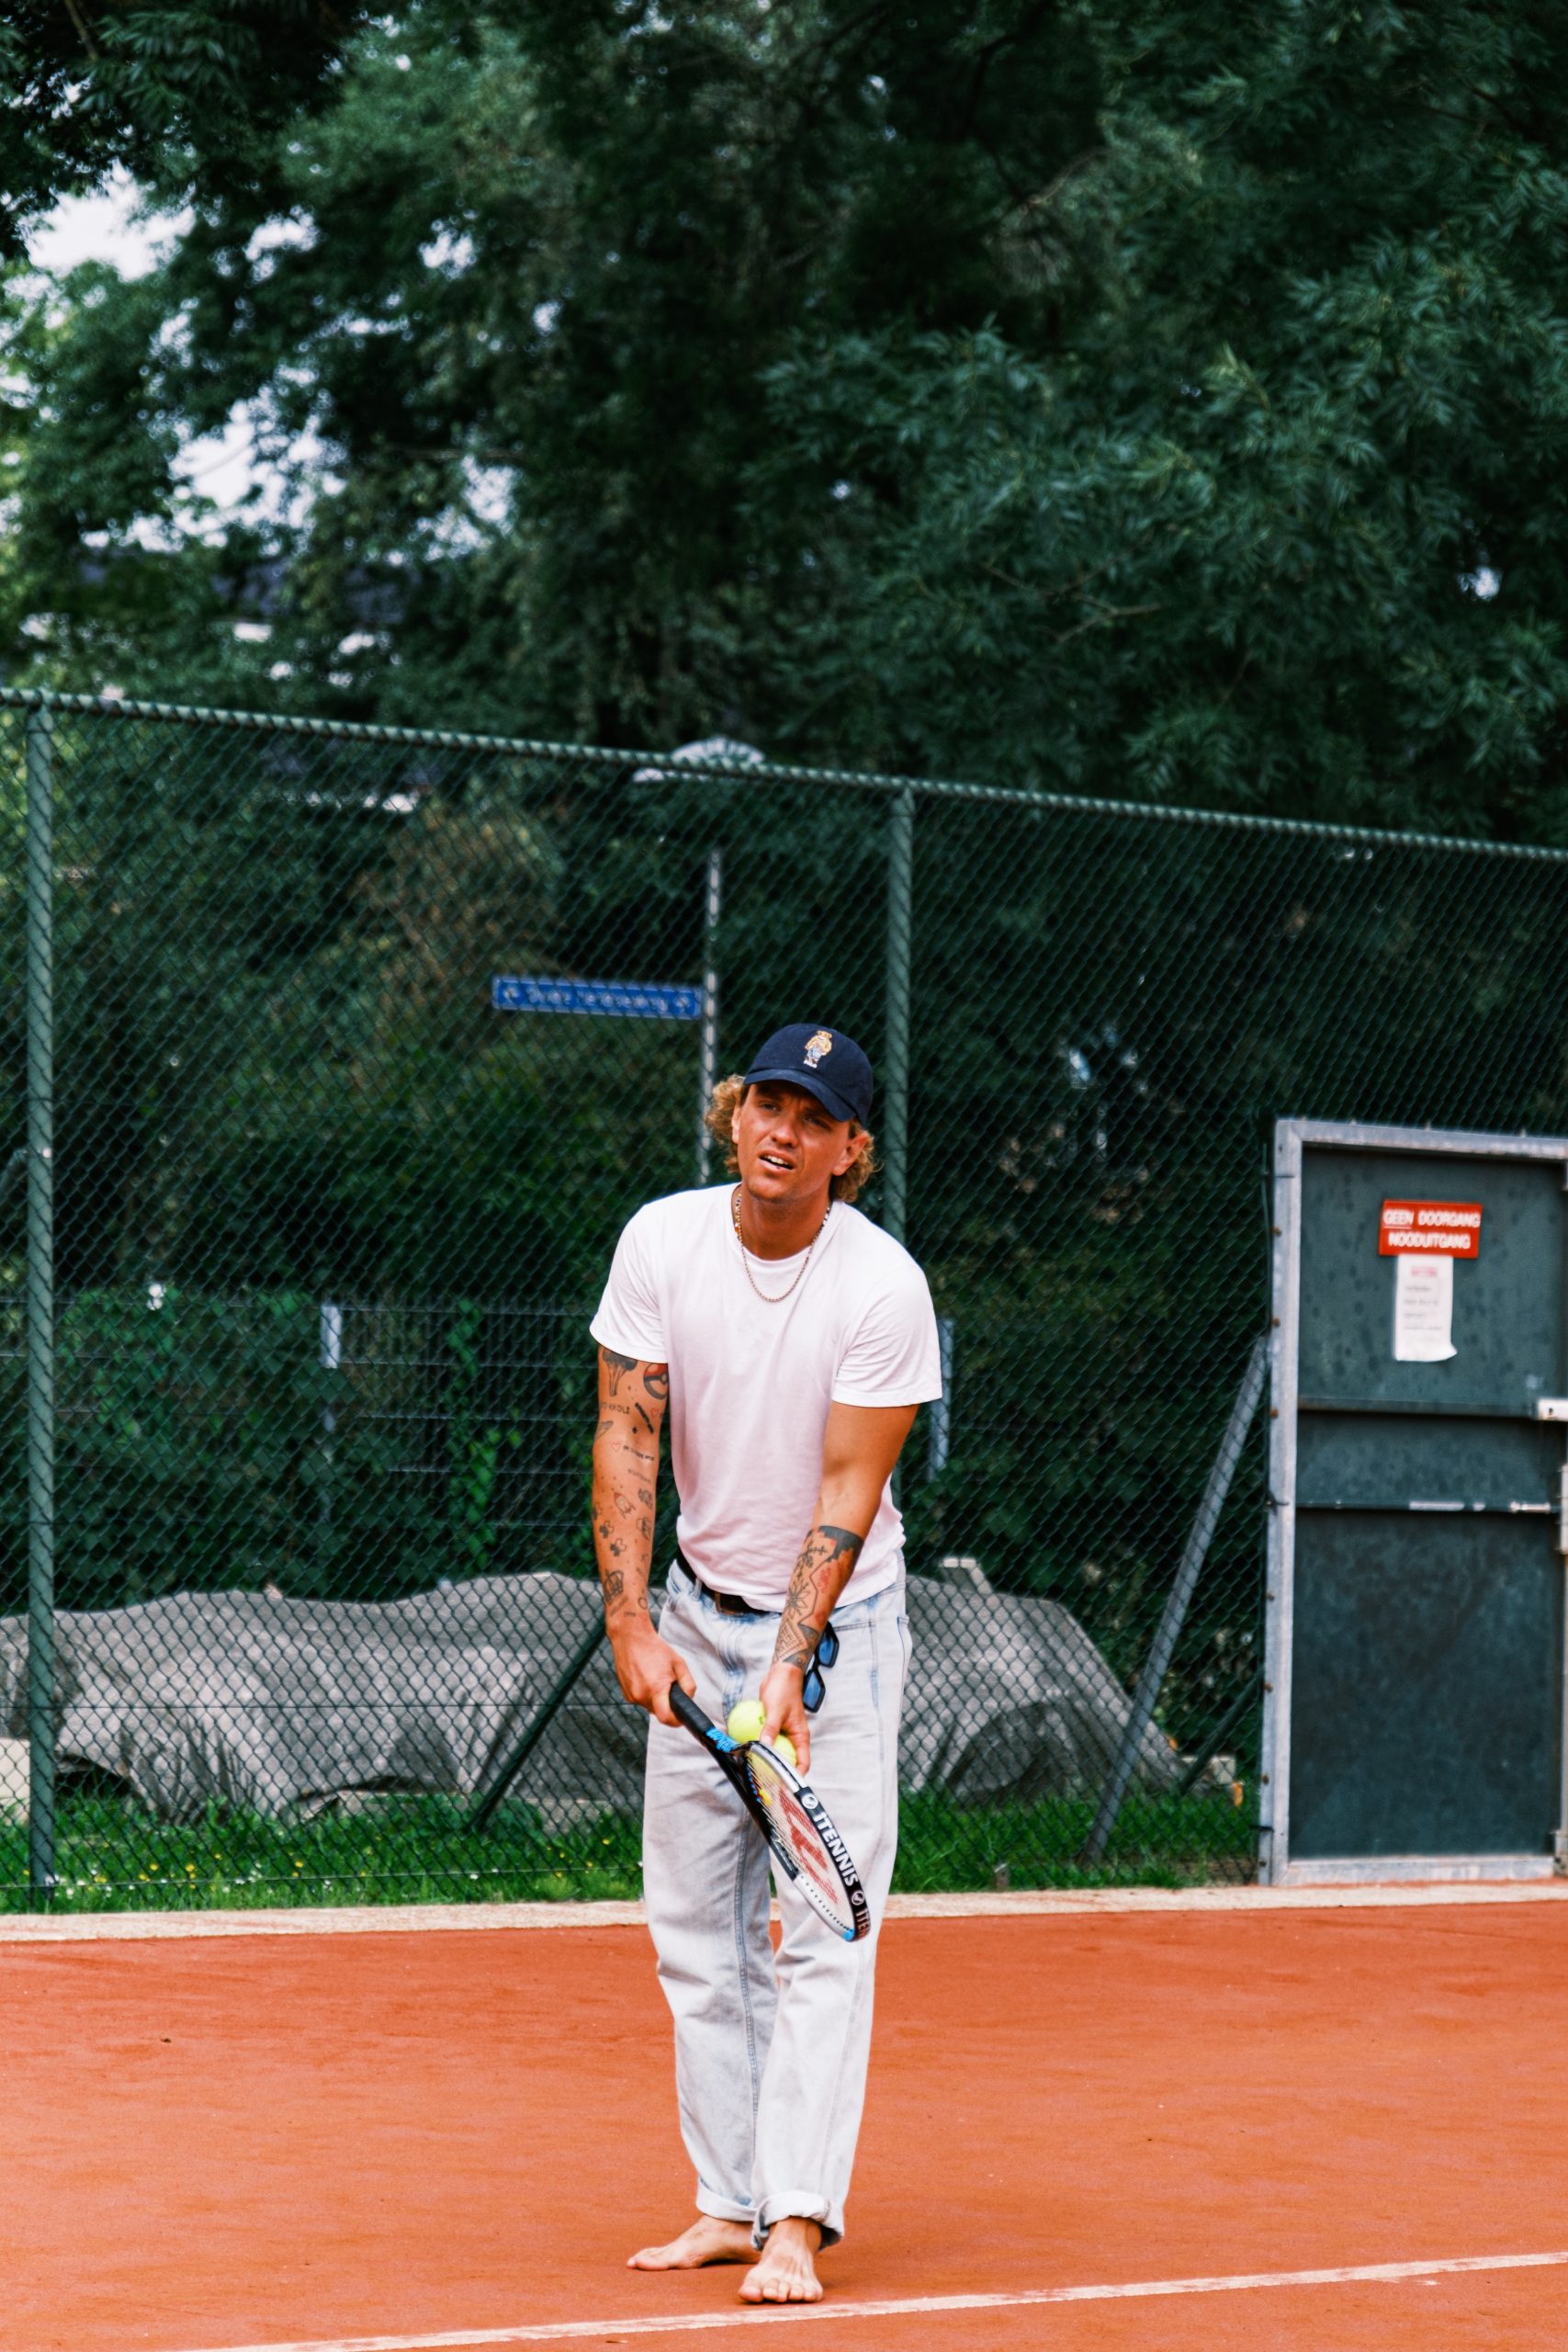 A man holding a tennis racket on a tennis court.